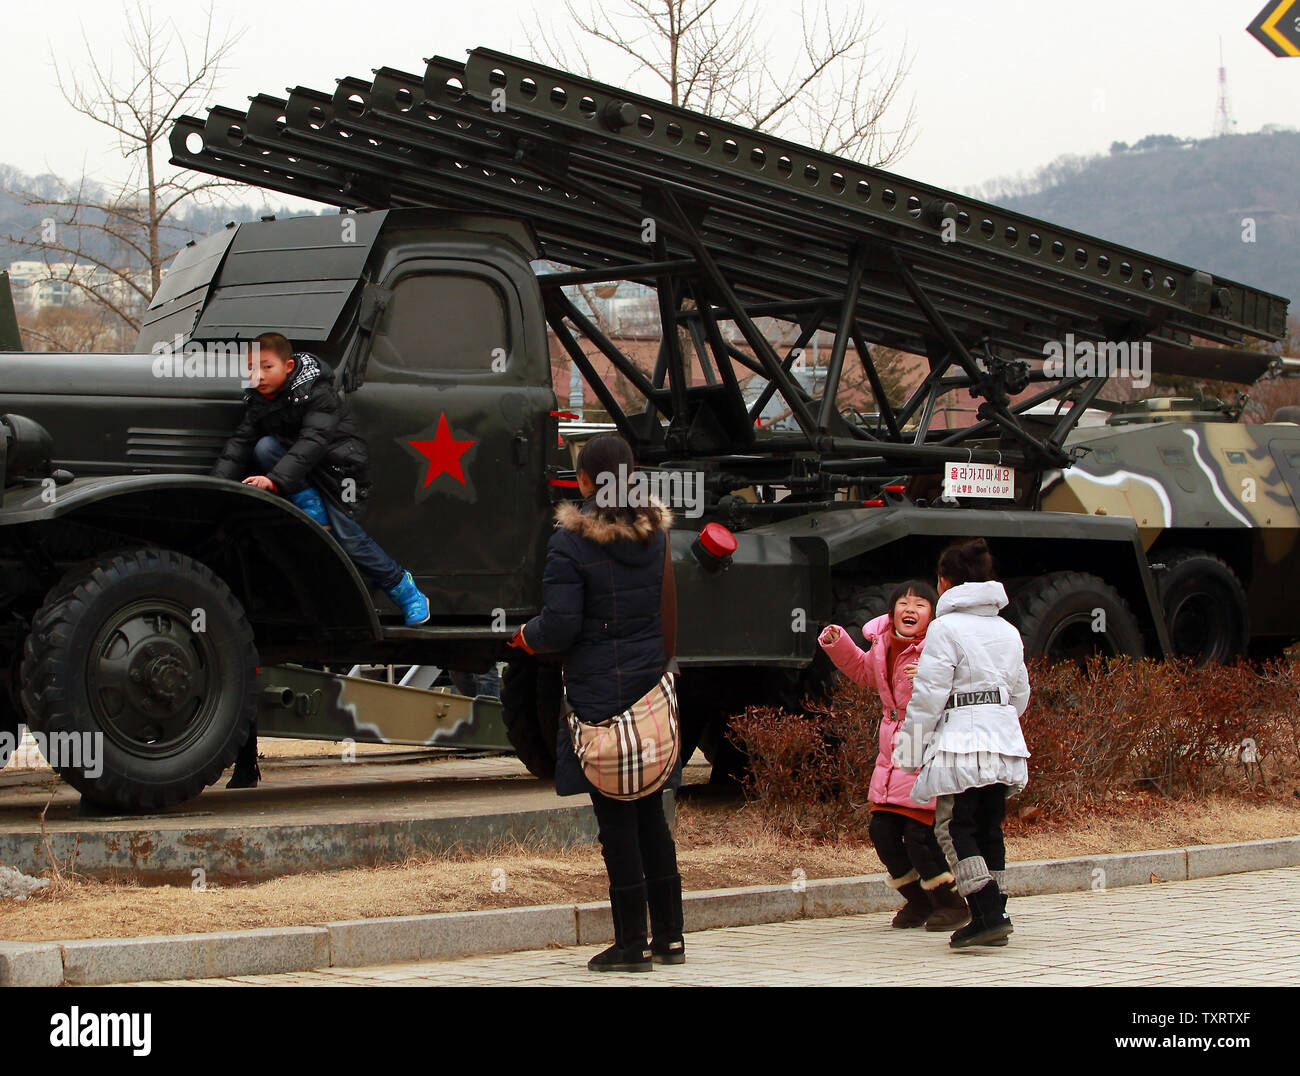 Un niño juega coreano en un BM-13 132mm lanzador de cohetes Katyusha en exhibición en el Monumento a los caídos en la guerra de Corea en Seúl el 28 de enero de 2013. Corea del Norte dijo la semana pasada que planea llevar a cabo un nuevo ensayo nuclear y más lanzamientos de cohetes de largo alcance, que se dice son parte de una nueva fase de enfrentamiento con los Estados Unidos. Corea del Norte también advirtió de la posibilidad de "fuertes medidas contra-física" contra Corea del Sur si admite el endurecimiento de las sanciones de la ONU. UPI/Stephen afeitadora Foto de stock